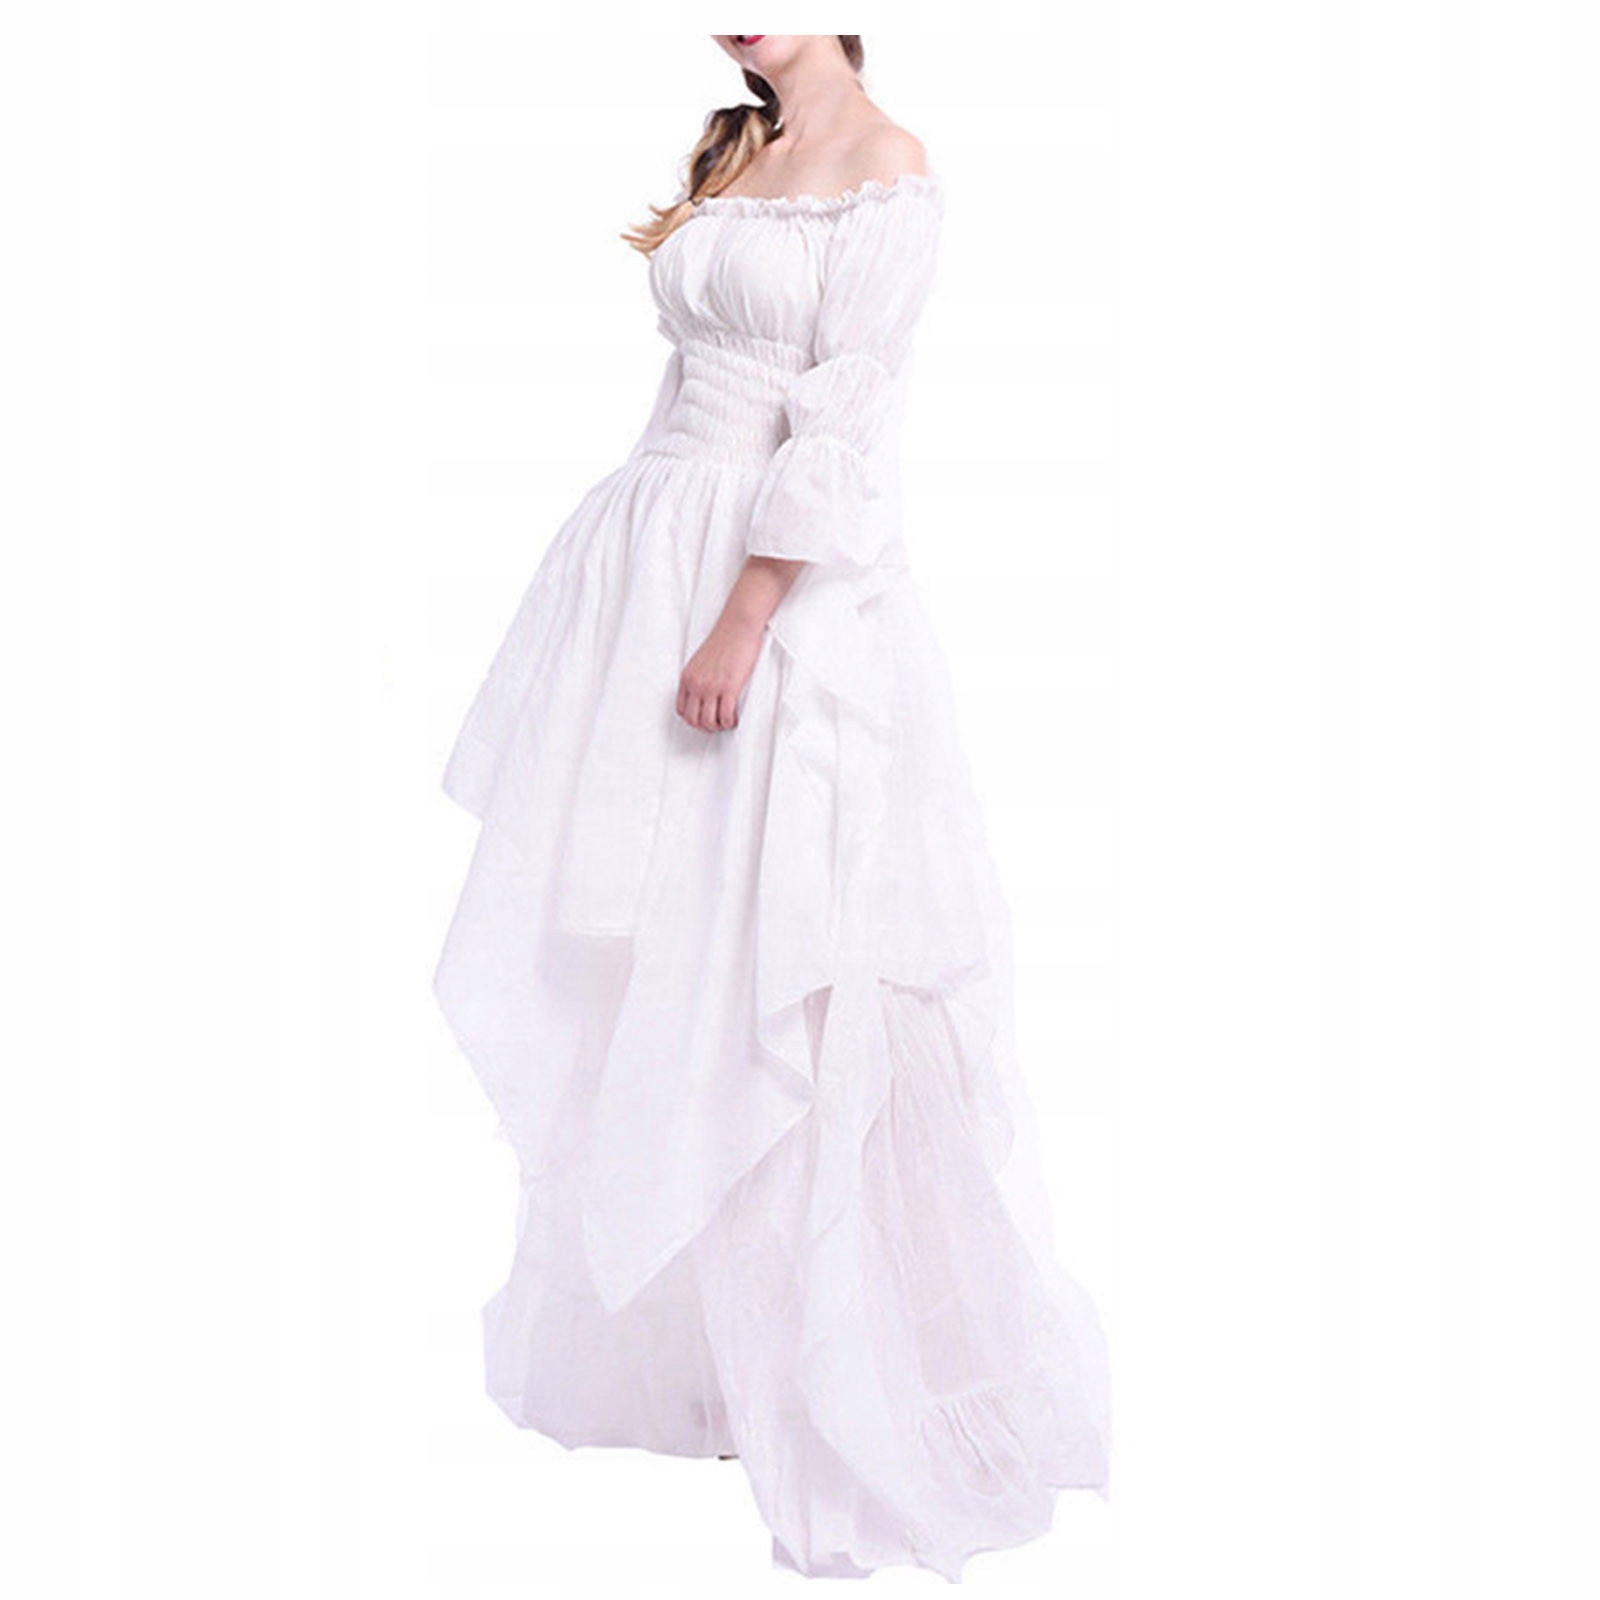 dámské šaty Tradiční gotické svatební šaty mořské panny za 691 Kč - Allegro